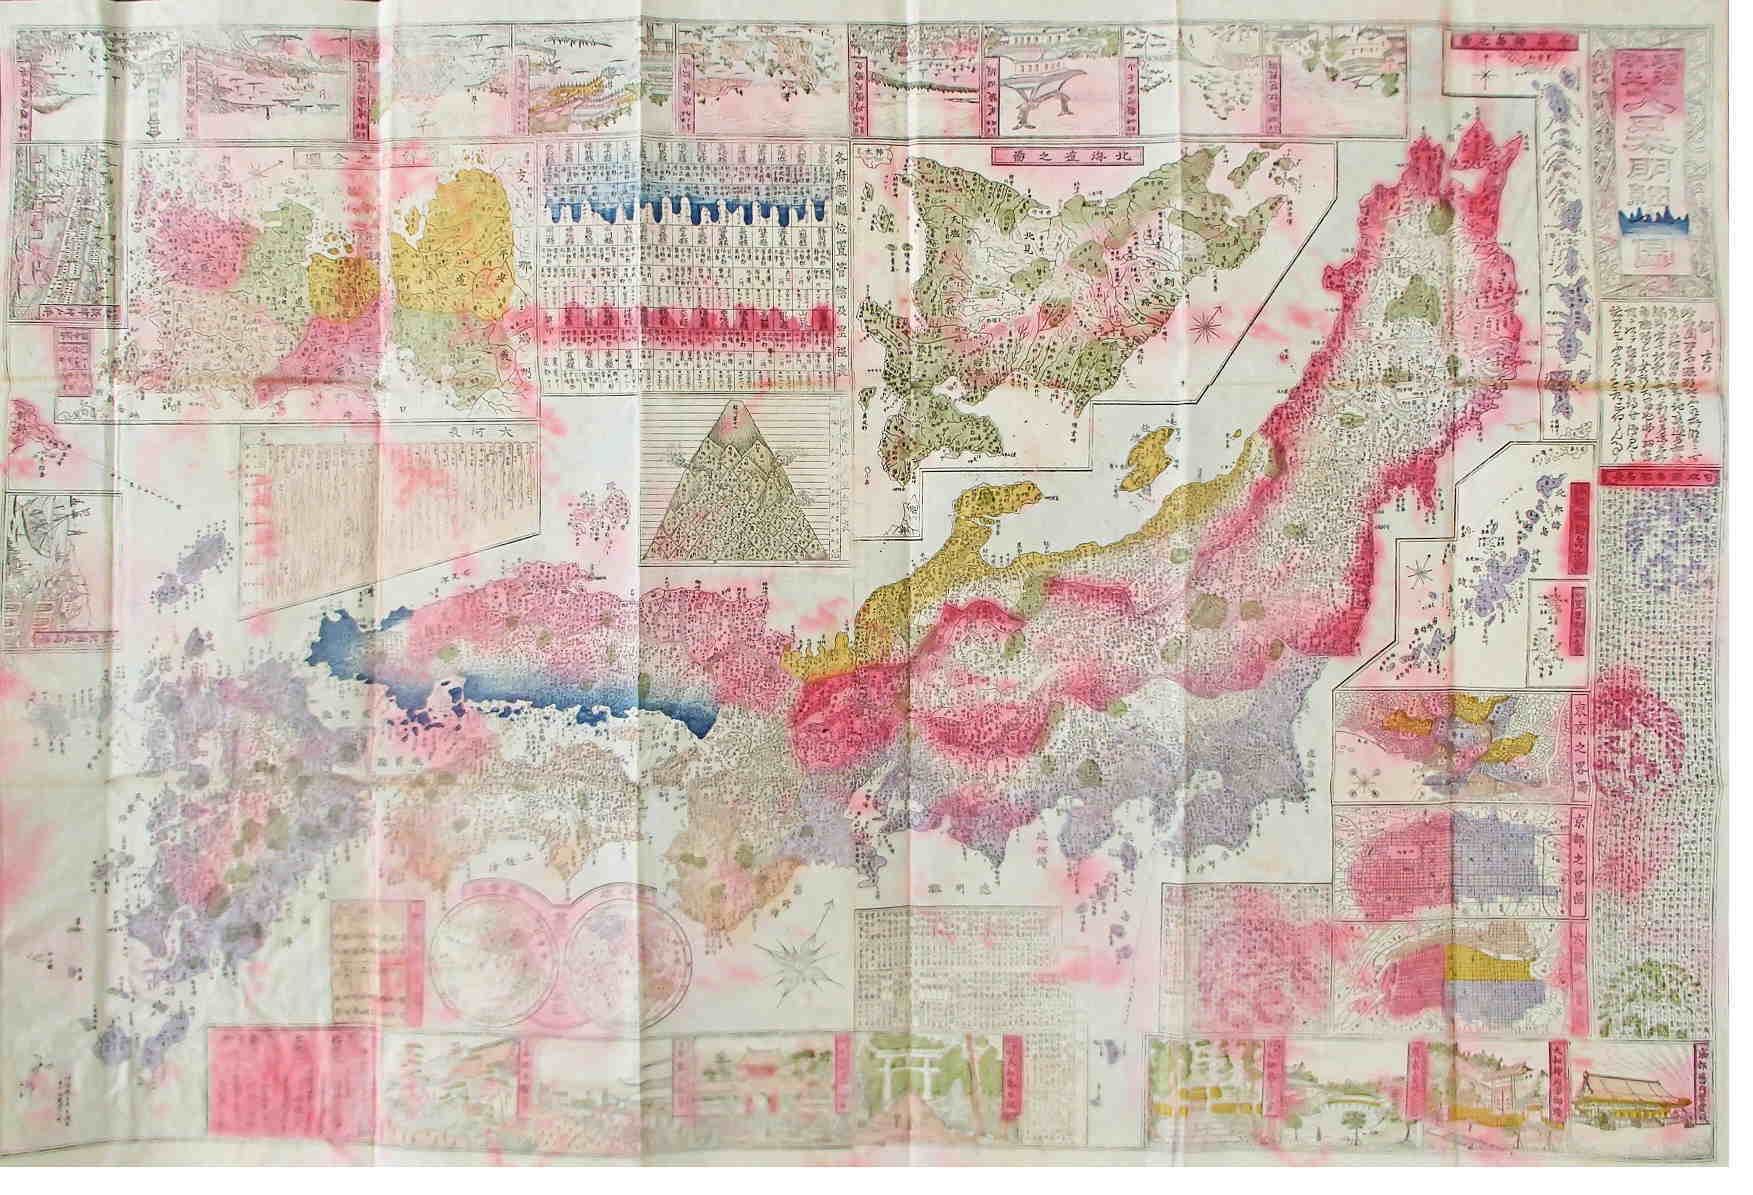 【戦前の希少日本地図】戦前の代表格の日本地図・大正13年出版・小川琢治 先生作